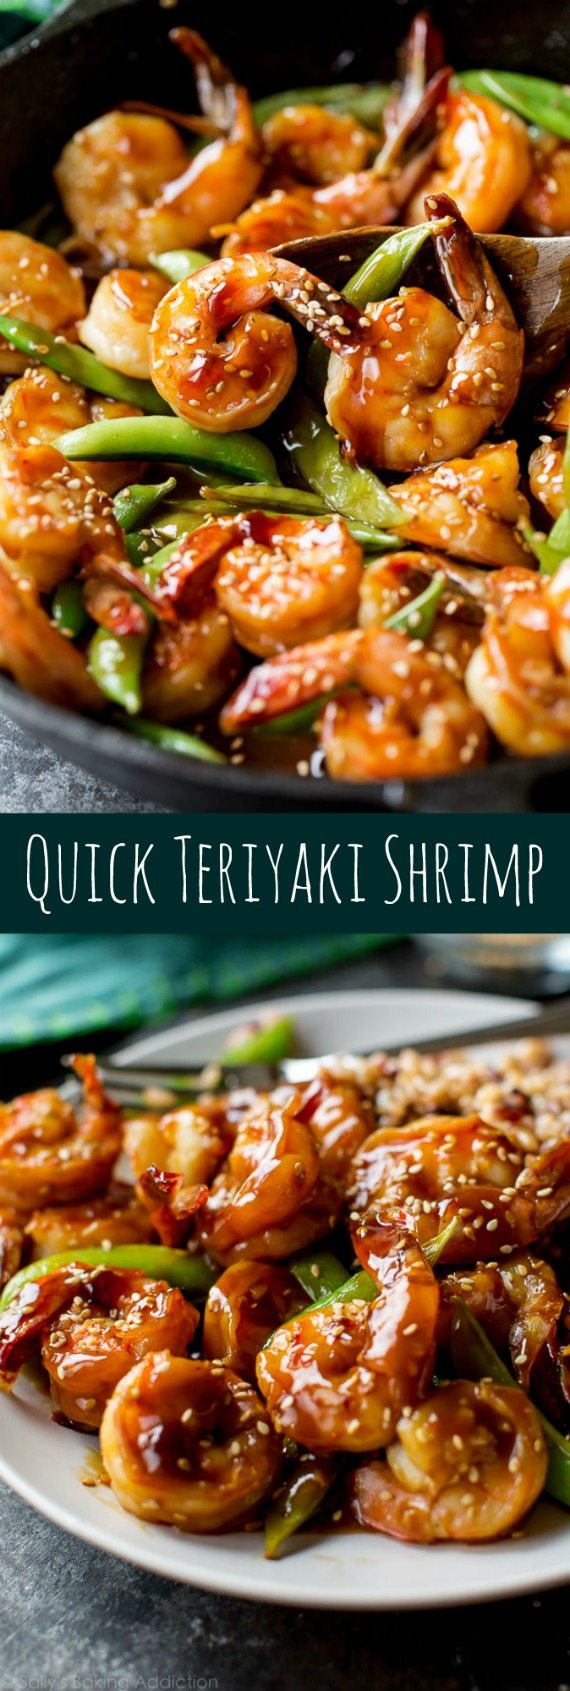 Facile, sain et sur la table en 30 minutes environ! Recette rapide de crevettes teriyaki maison sur sallysbakingaddiction.com